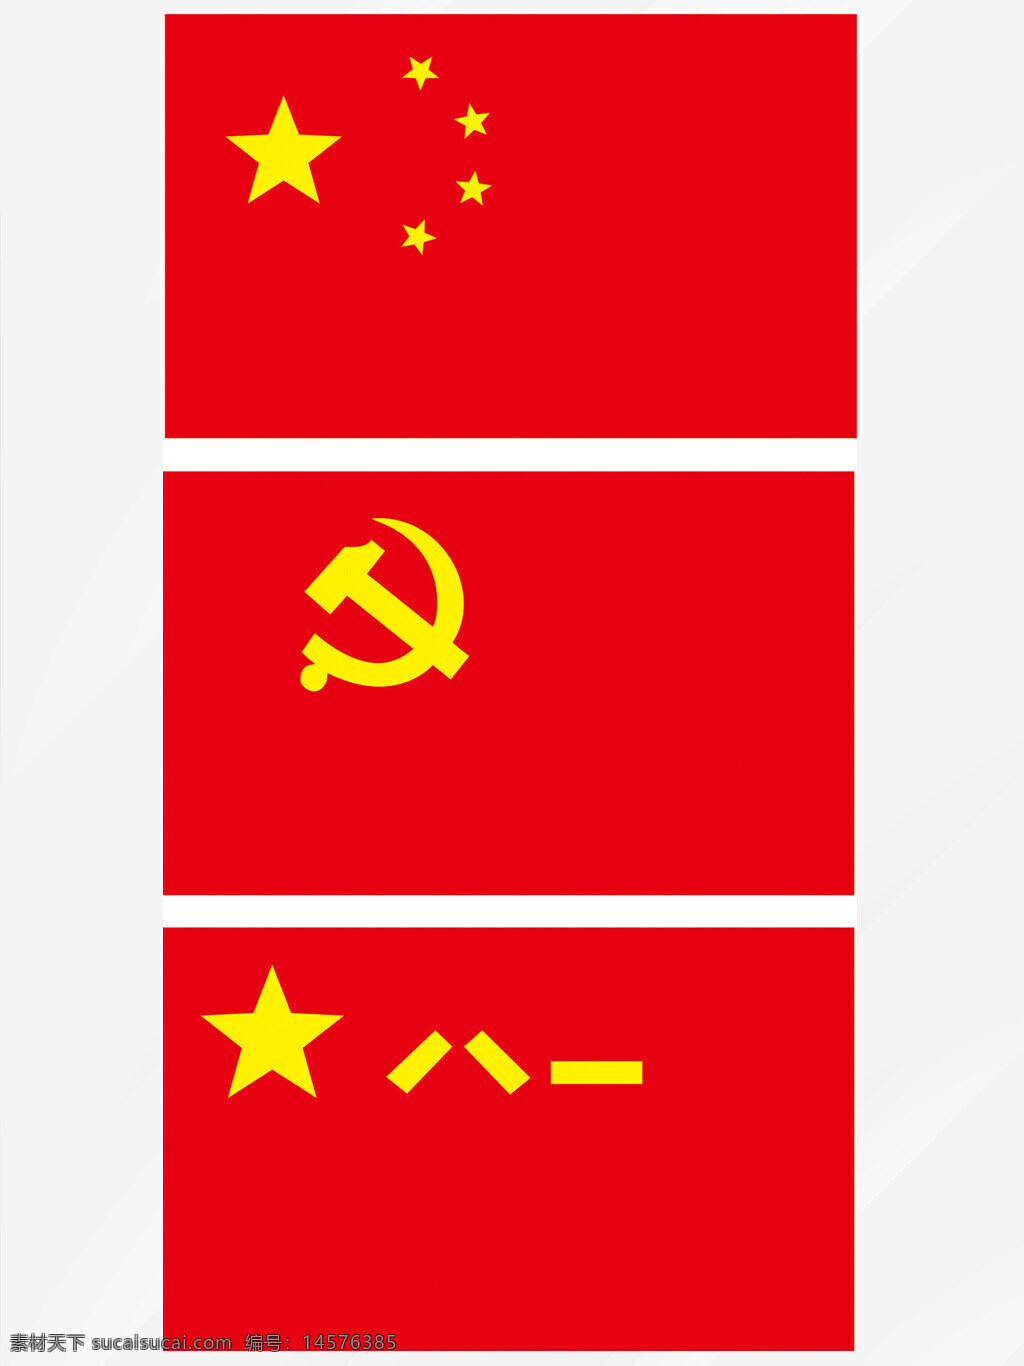 国旗 党旗 八一旗帜 中国人民共和国国旗 中国人民共产党党旗 共产党党旗 中国国旗 红旗